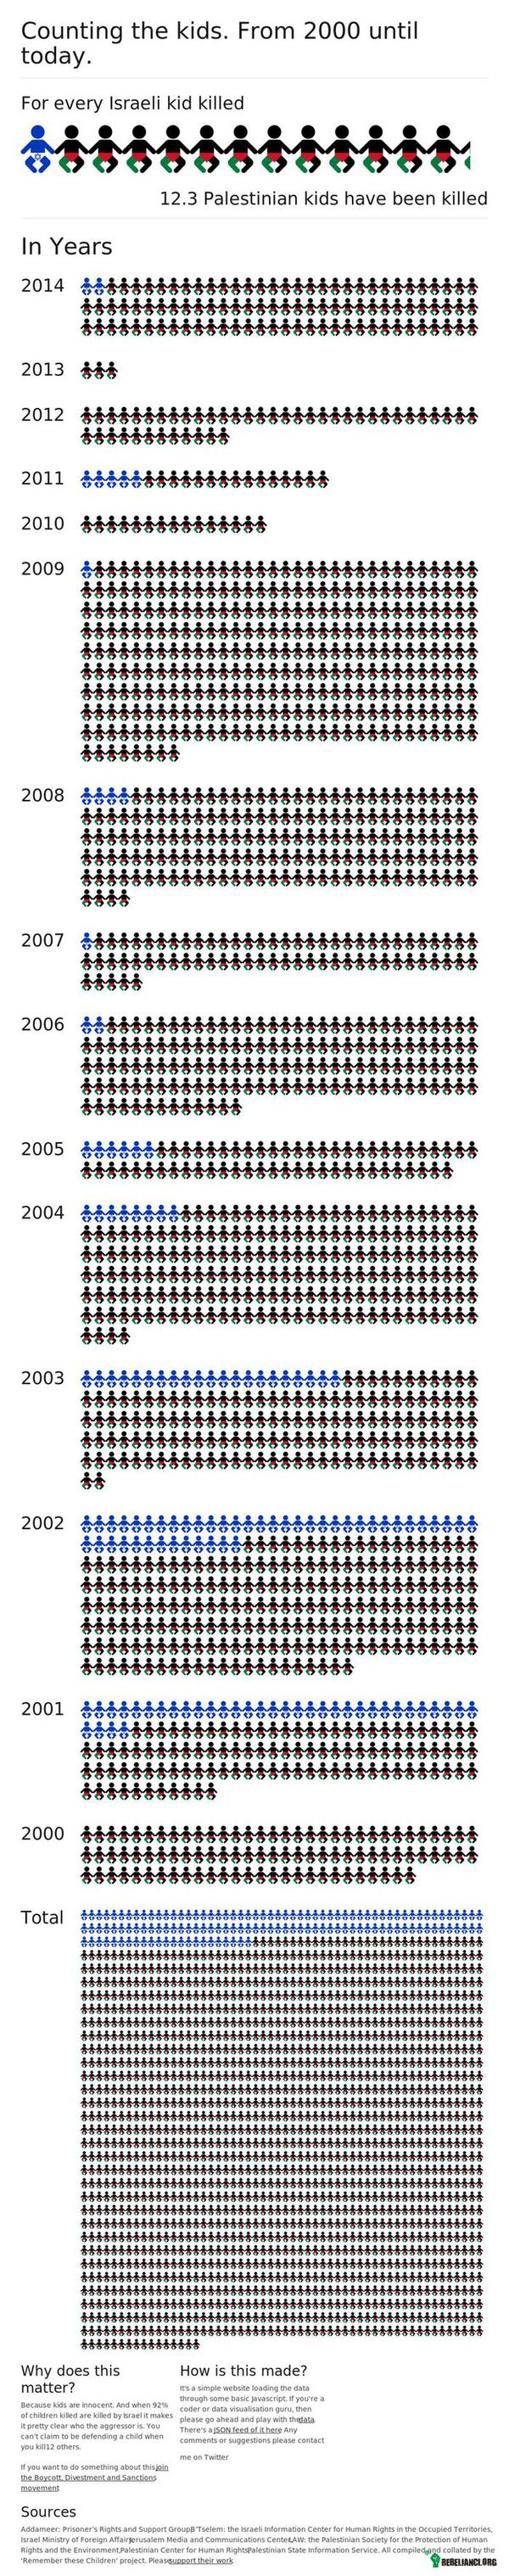 Ilość zabitych dzieci w trakcie konfliktu Izrael-Palestyna –  